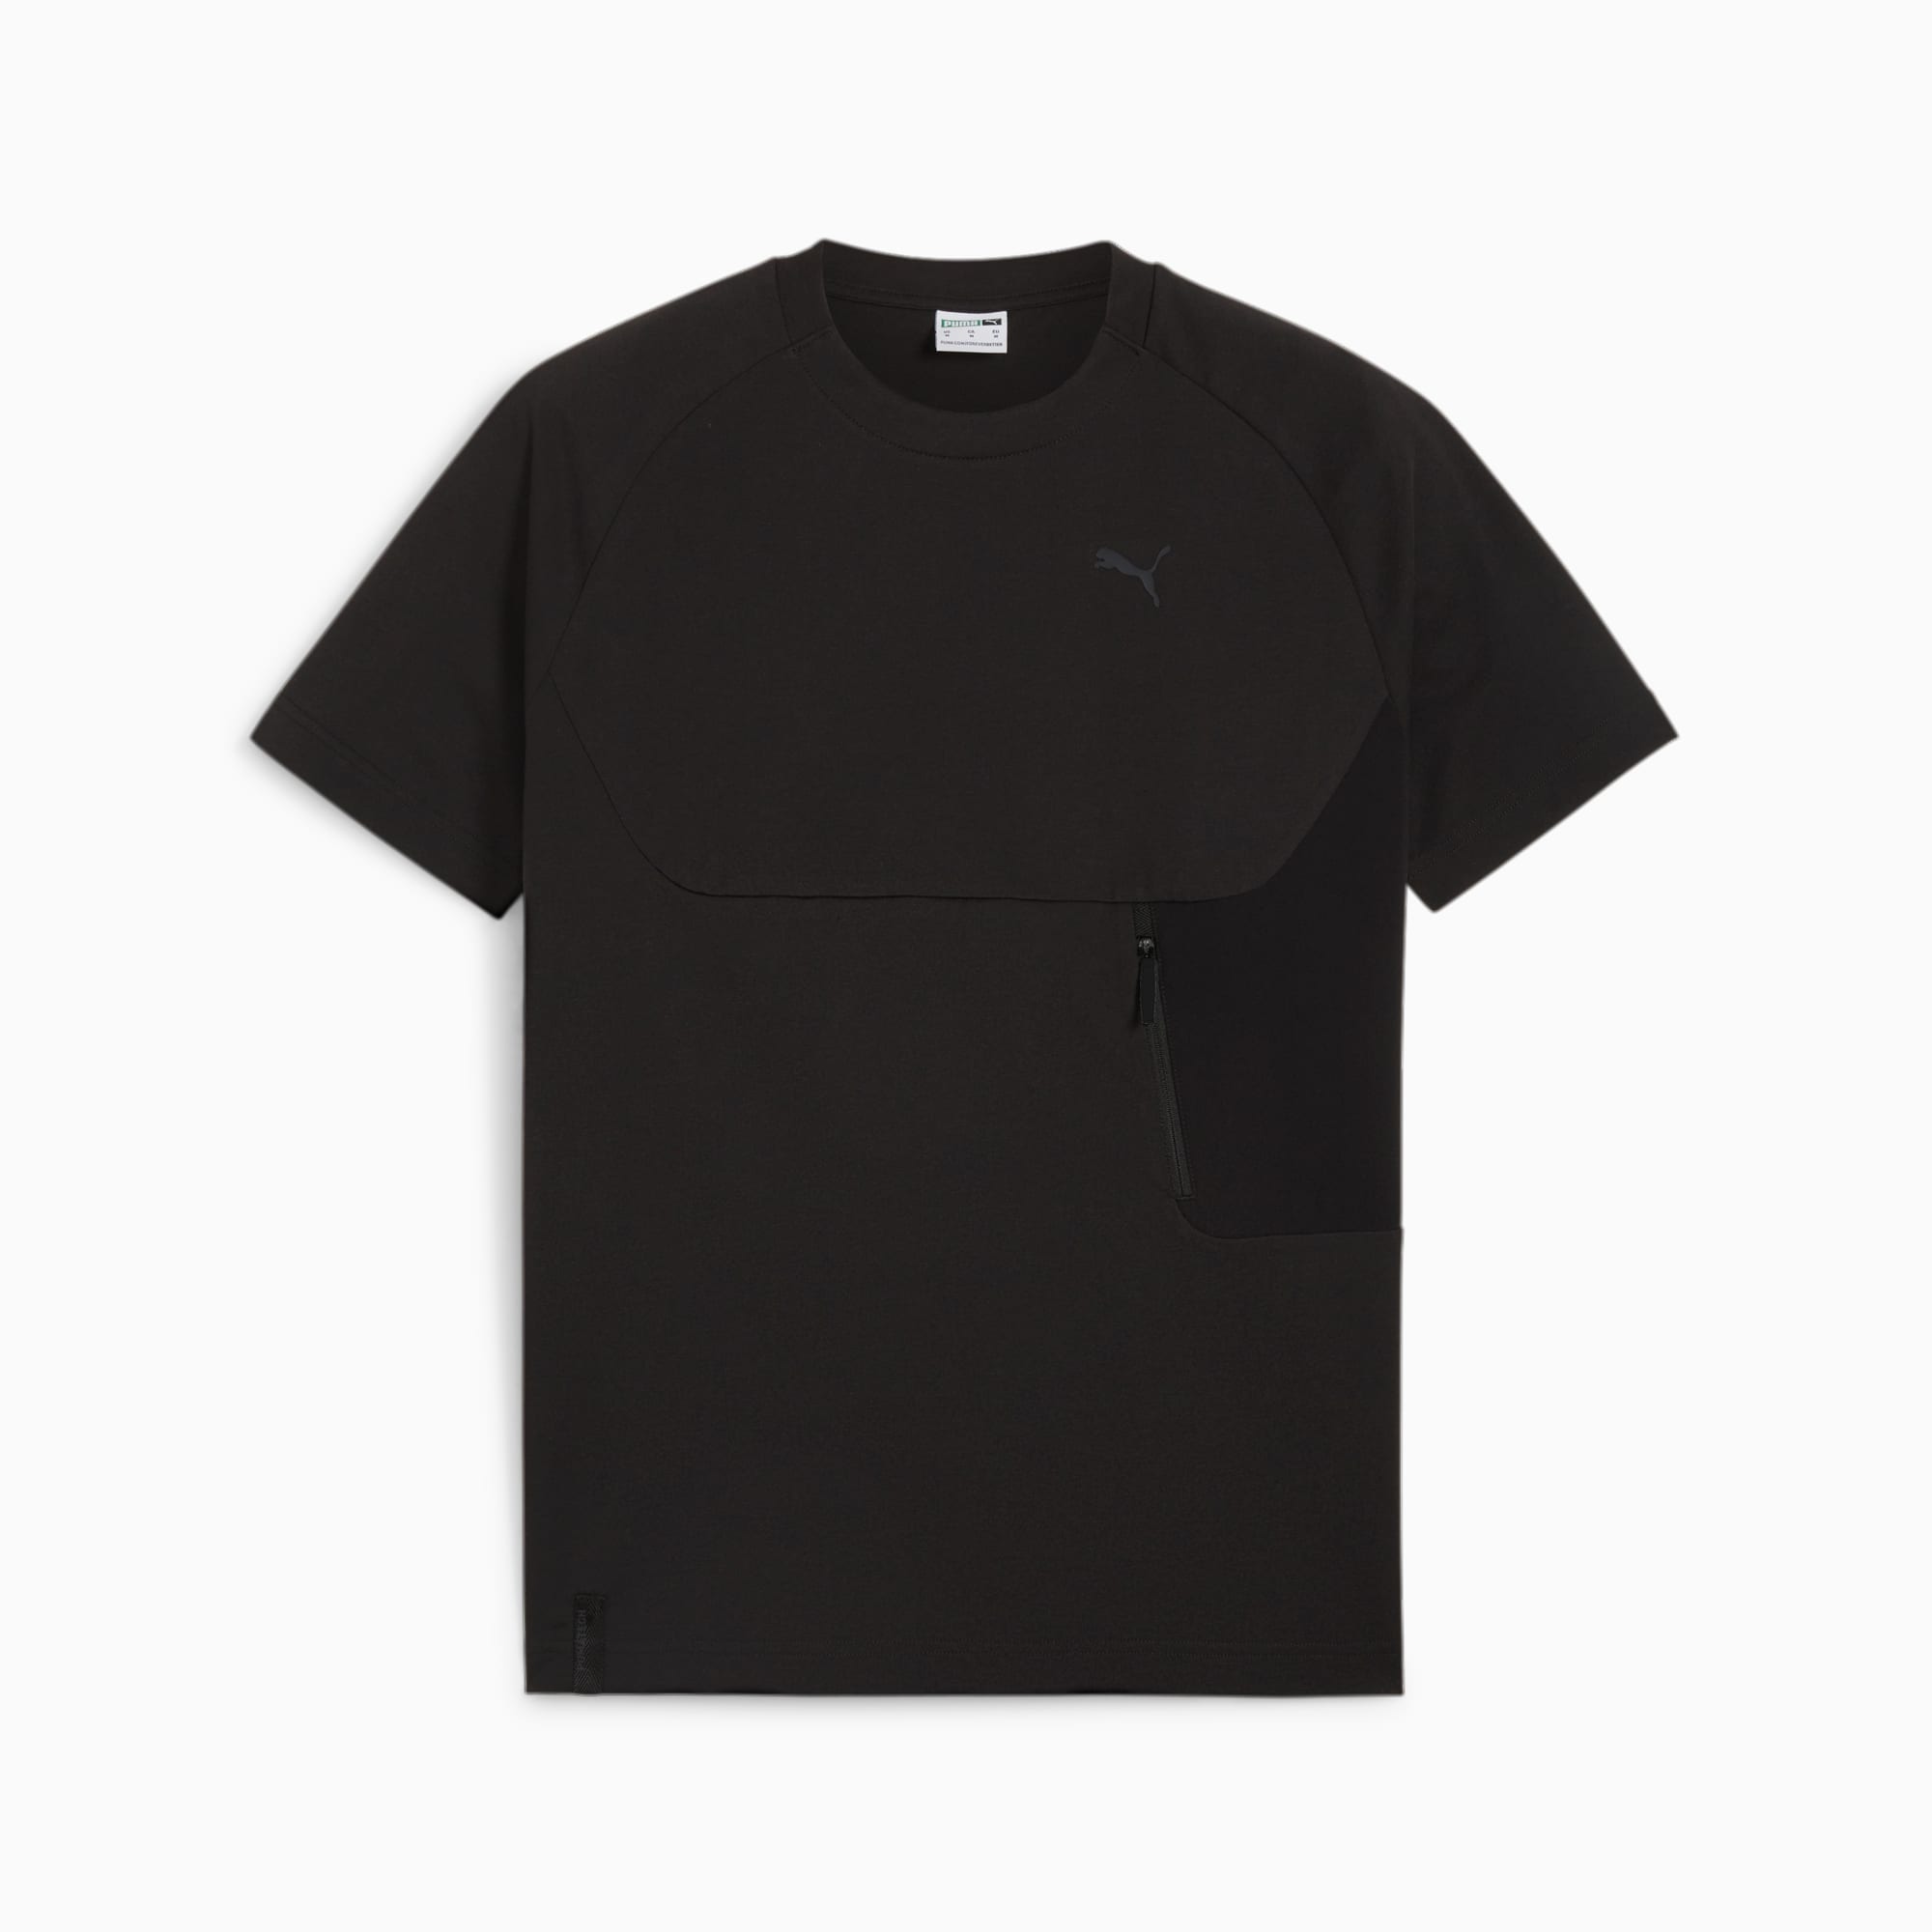 PUMATECH T-Shirt Mit Tasche Herren, Schwarz, Größe: L, Kleidung